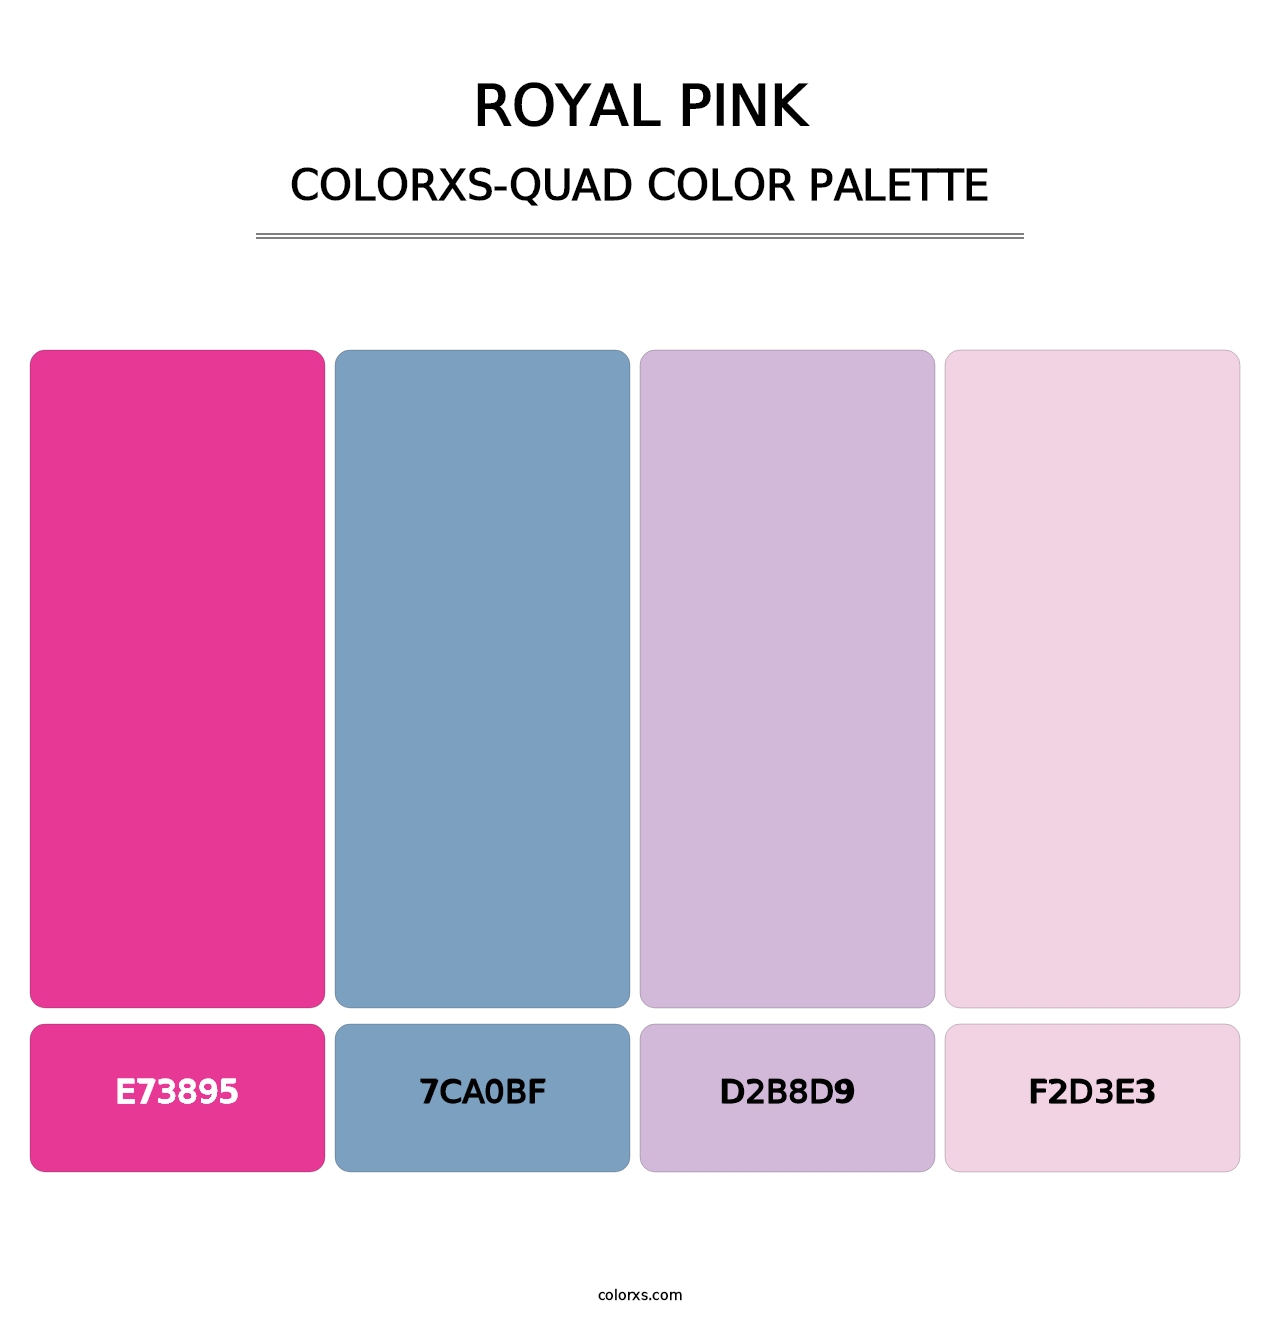 Royal Pink - Colorxs Quad Palette